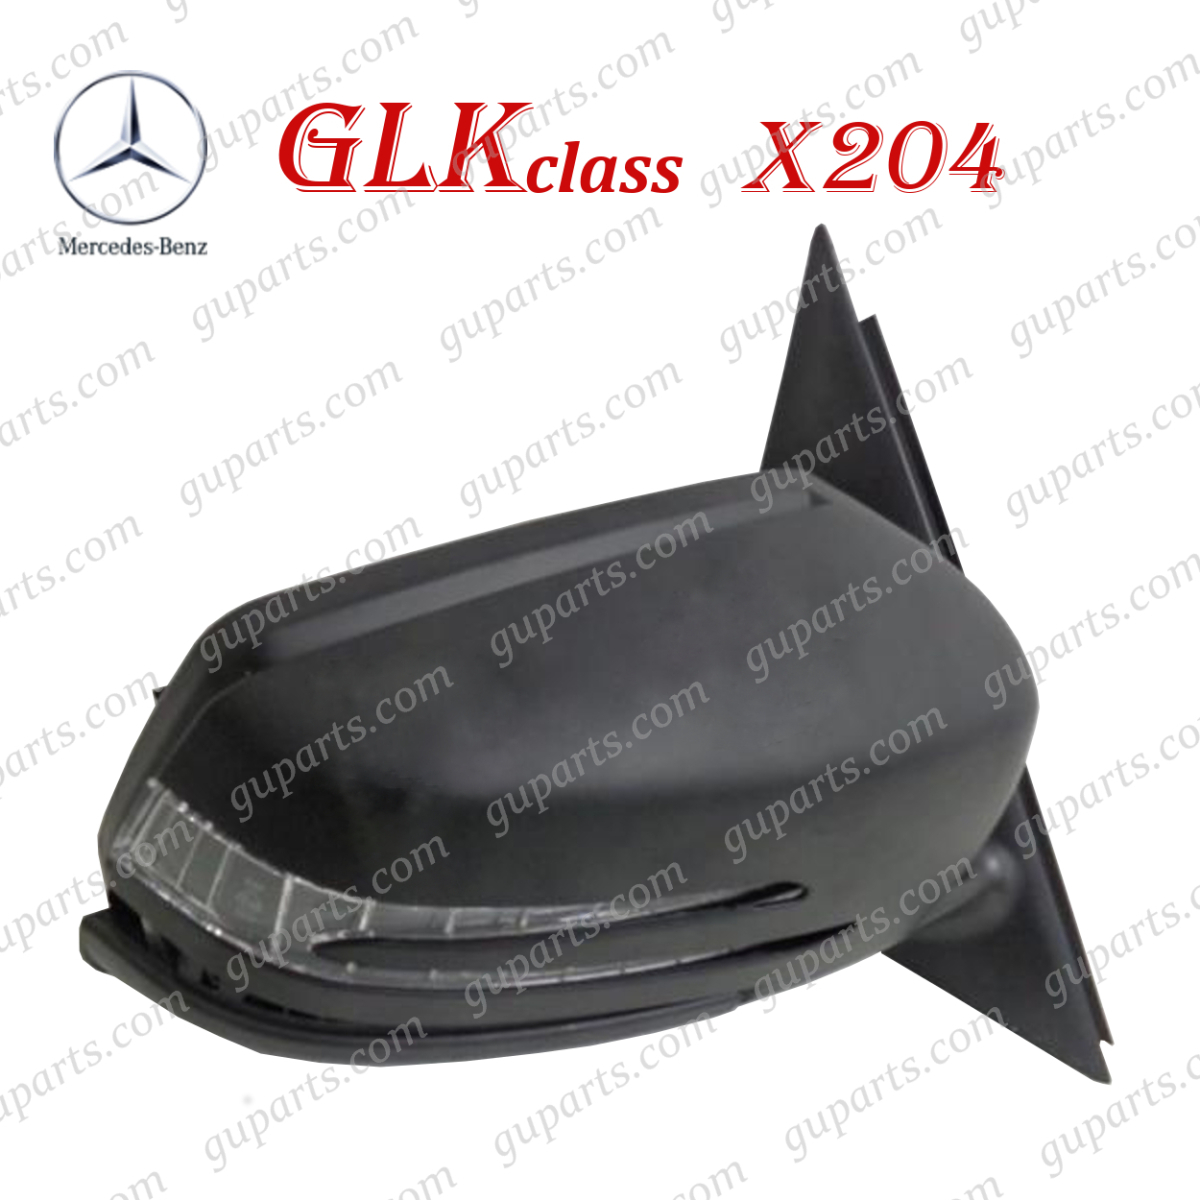  Benz GLK X204 2008~2016 GLK300 GLK350 204981 204988 правый корпус зеркала двери LED указатель поворота память электрический складывание стакан обогреватель 